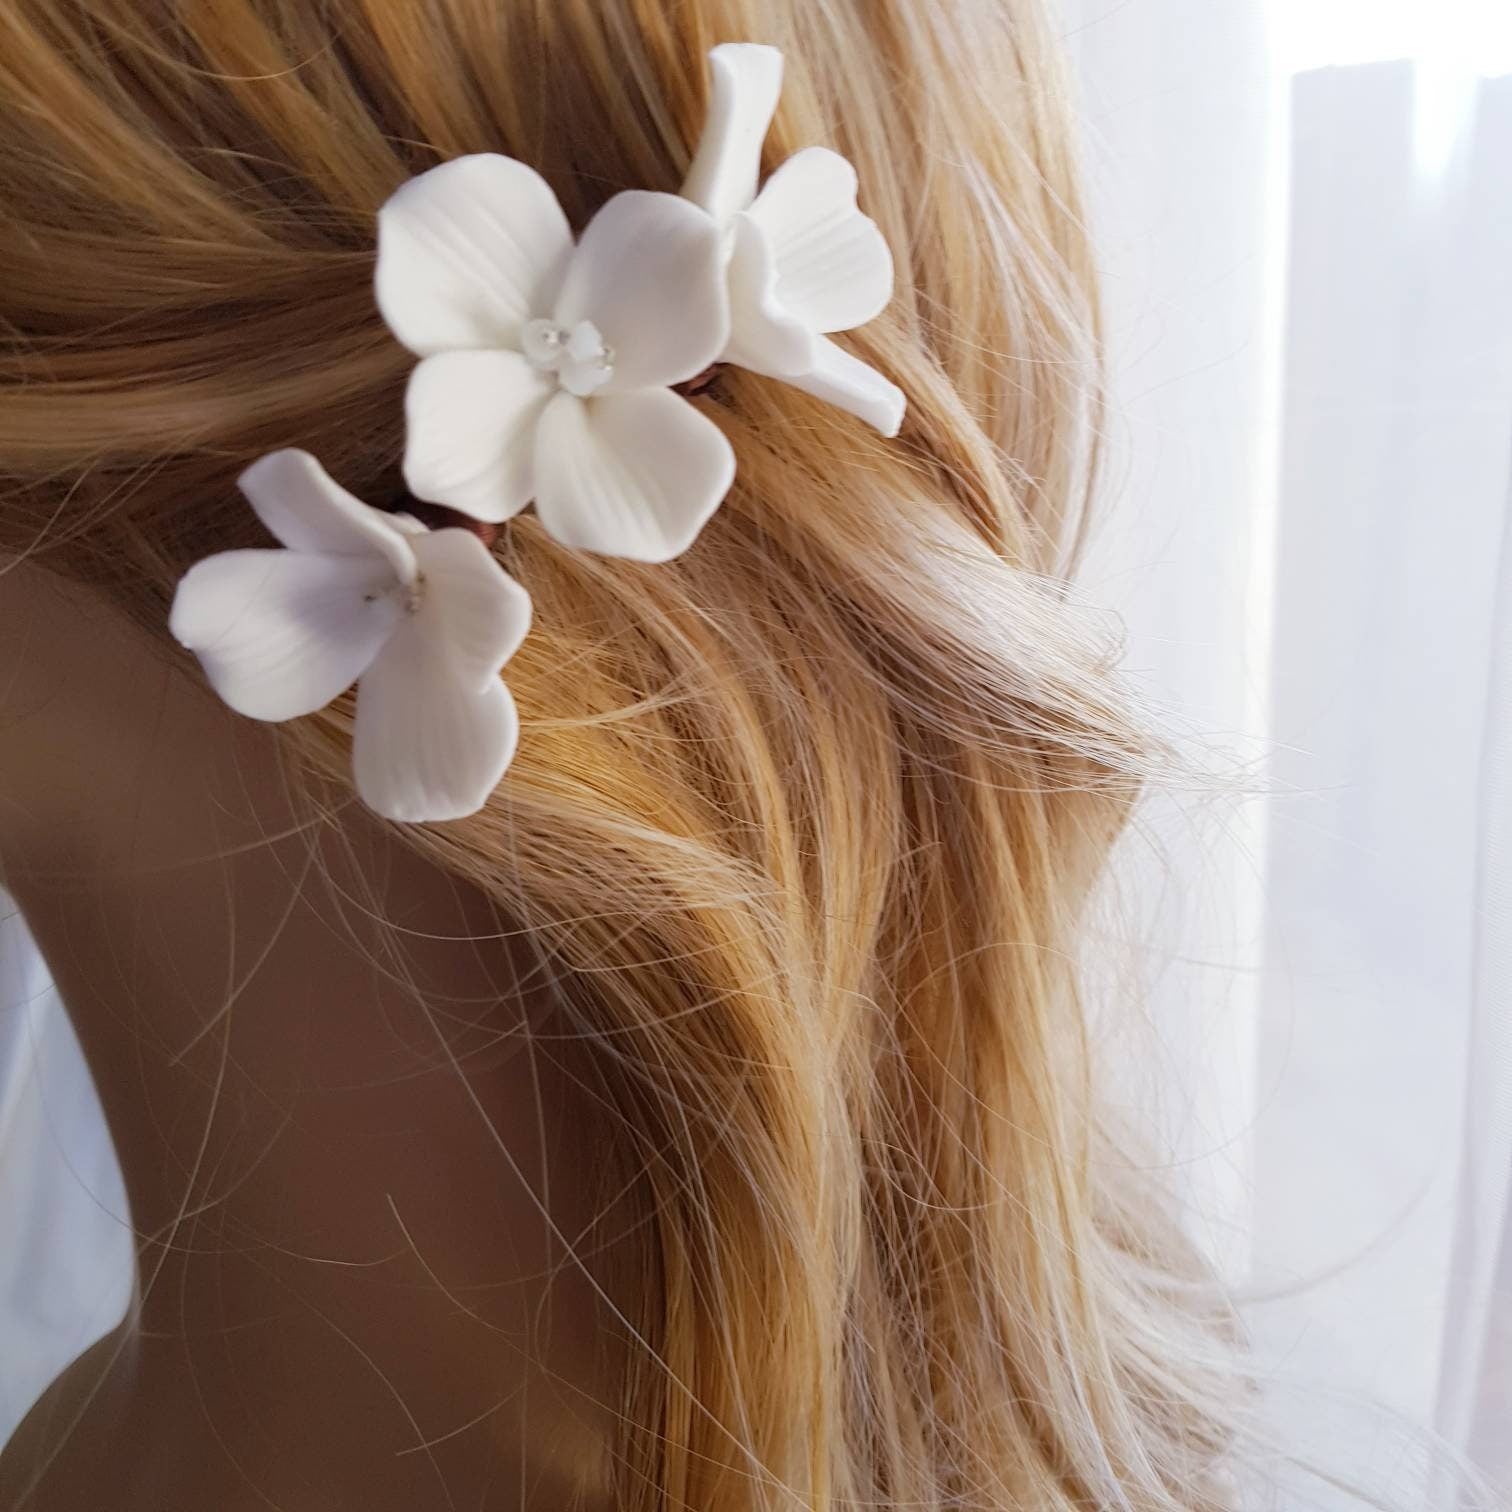 TROIS FLEURS Haircomb dainty white Flowers Hairpins Bridal Wedding Hair Pins Headpiece Accessories porcelain combs pin ceramic handmade